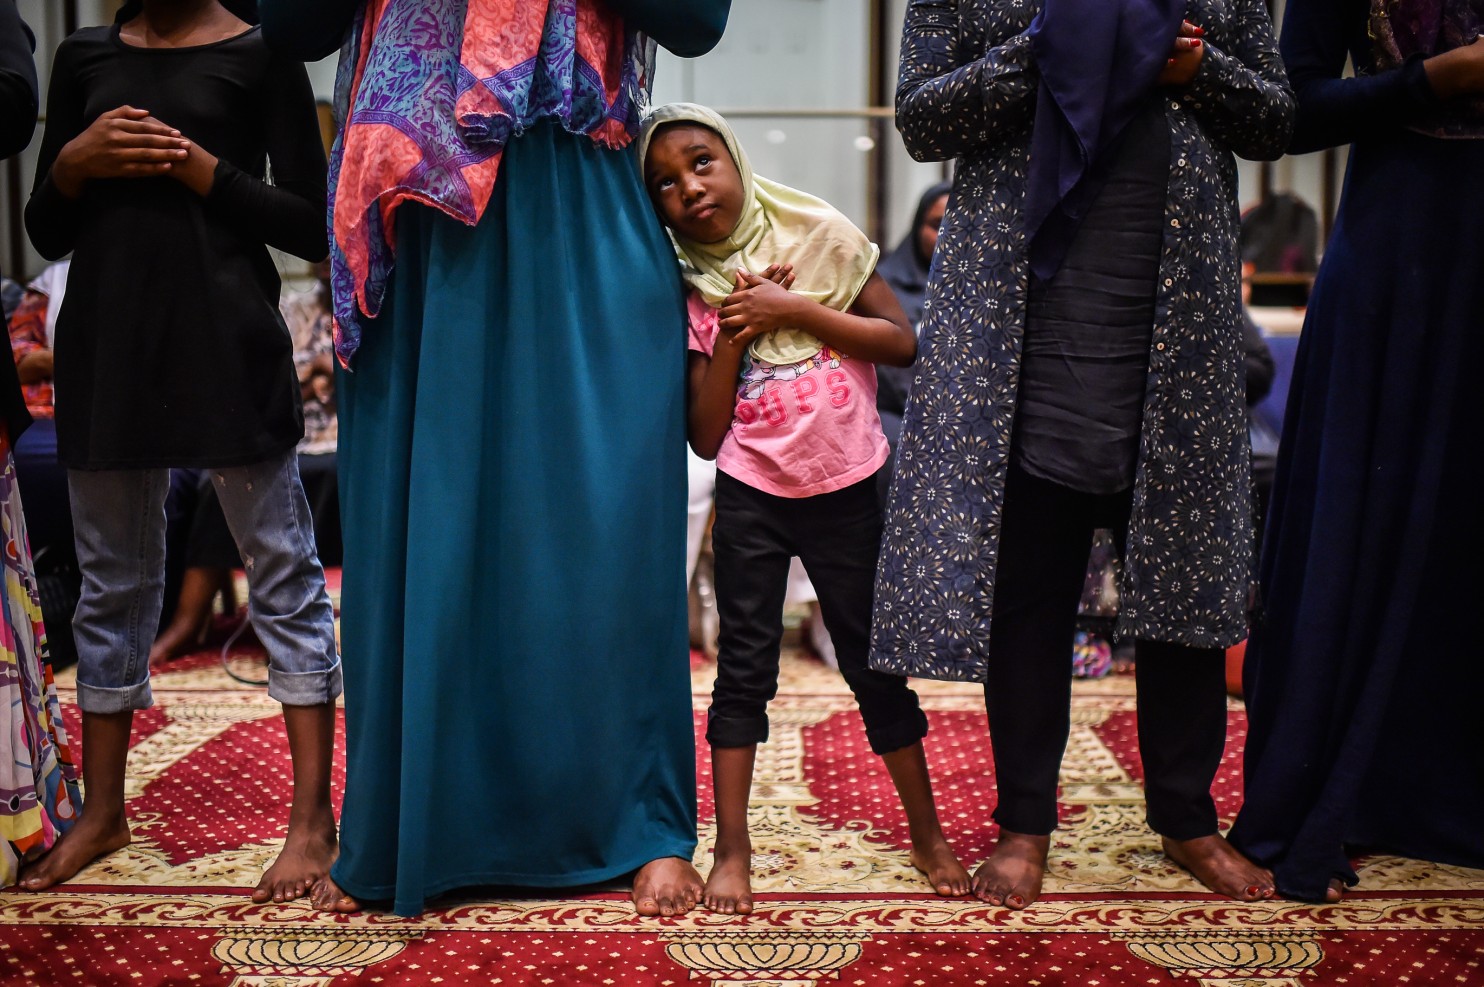 ‘Muslim Town’: A look inside Philadelphia’s thriving Muslim culture